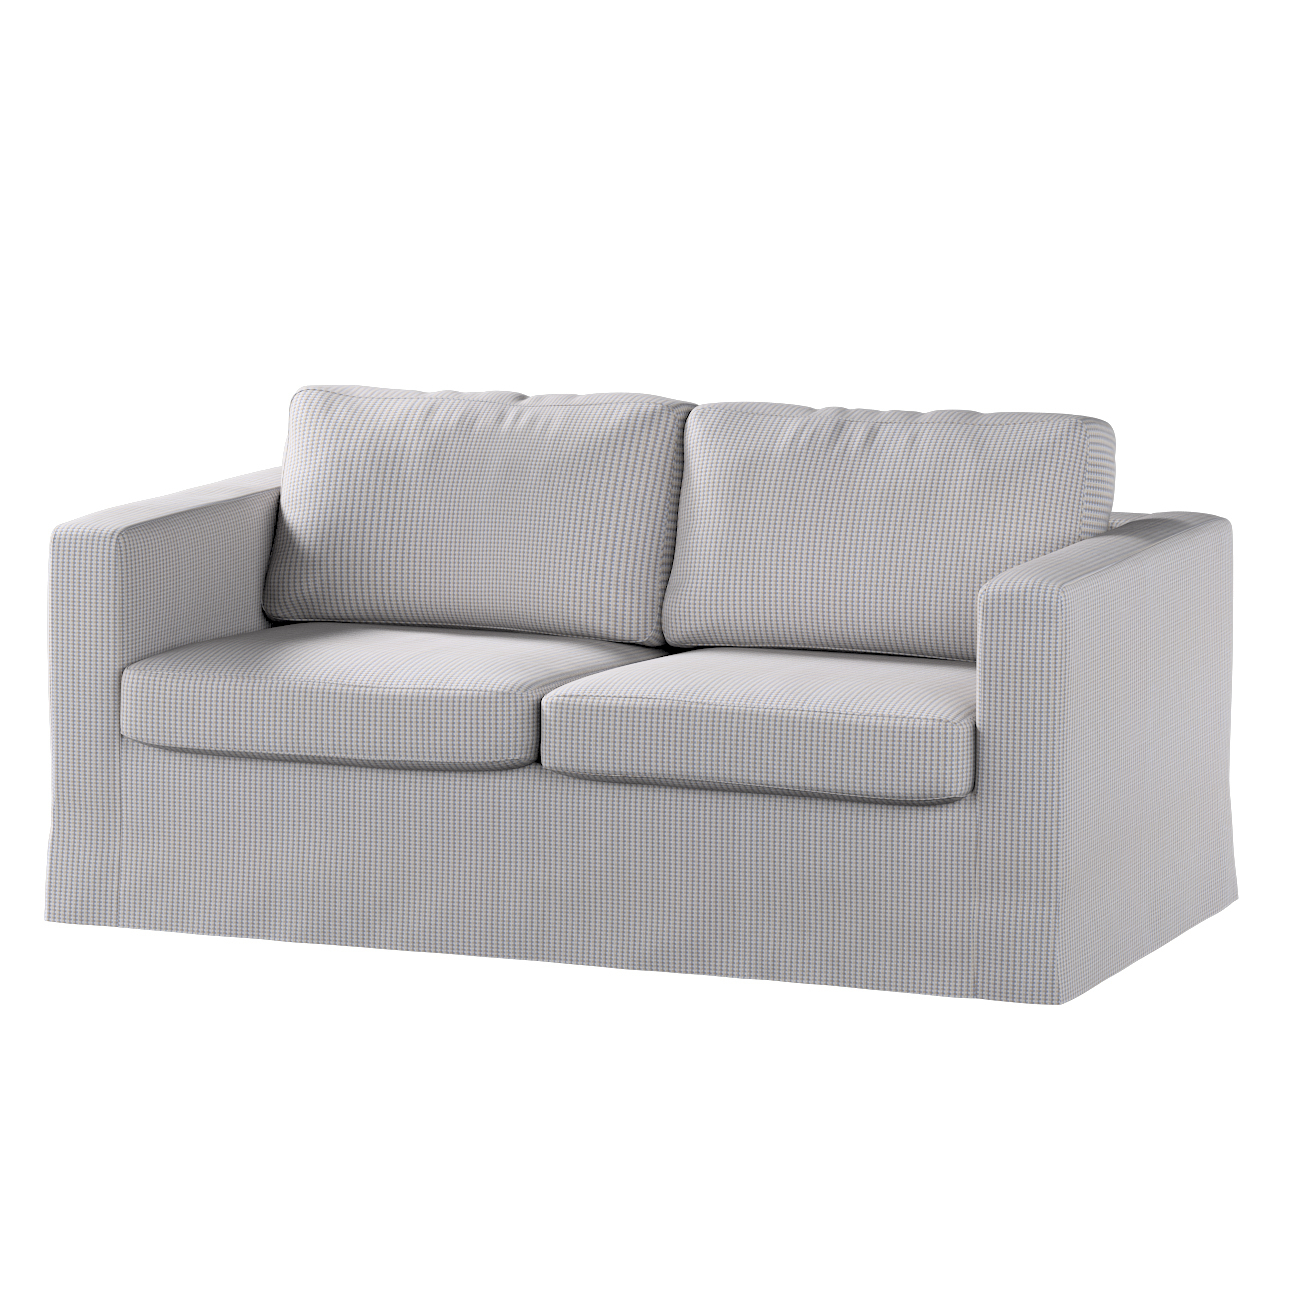 Bezug für Karlstad 2-Sitzer Sofa nicht ausklappbar, lang, beige-blau, Sofah günstig online kaufen